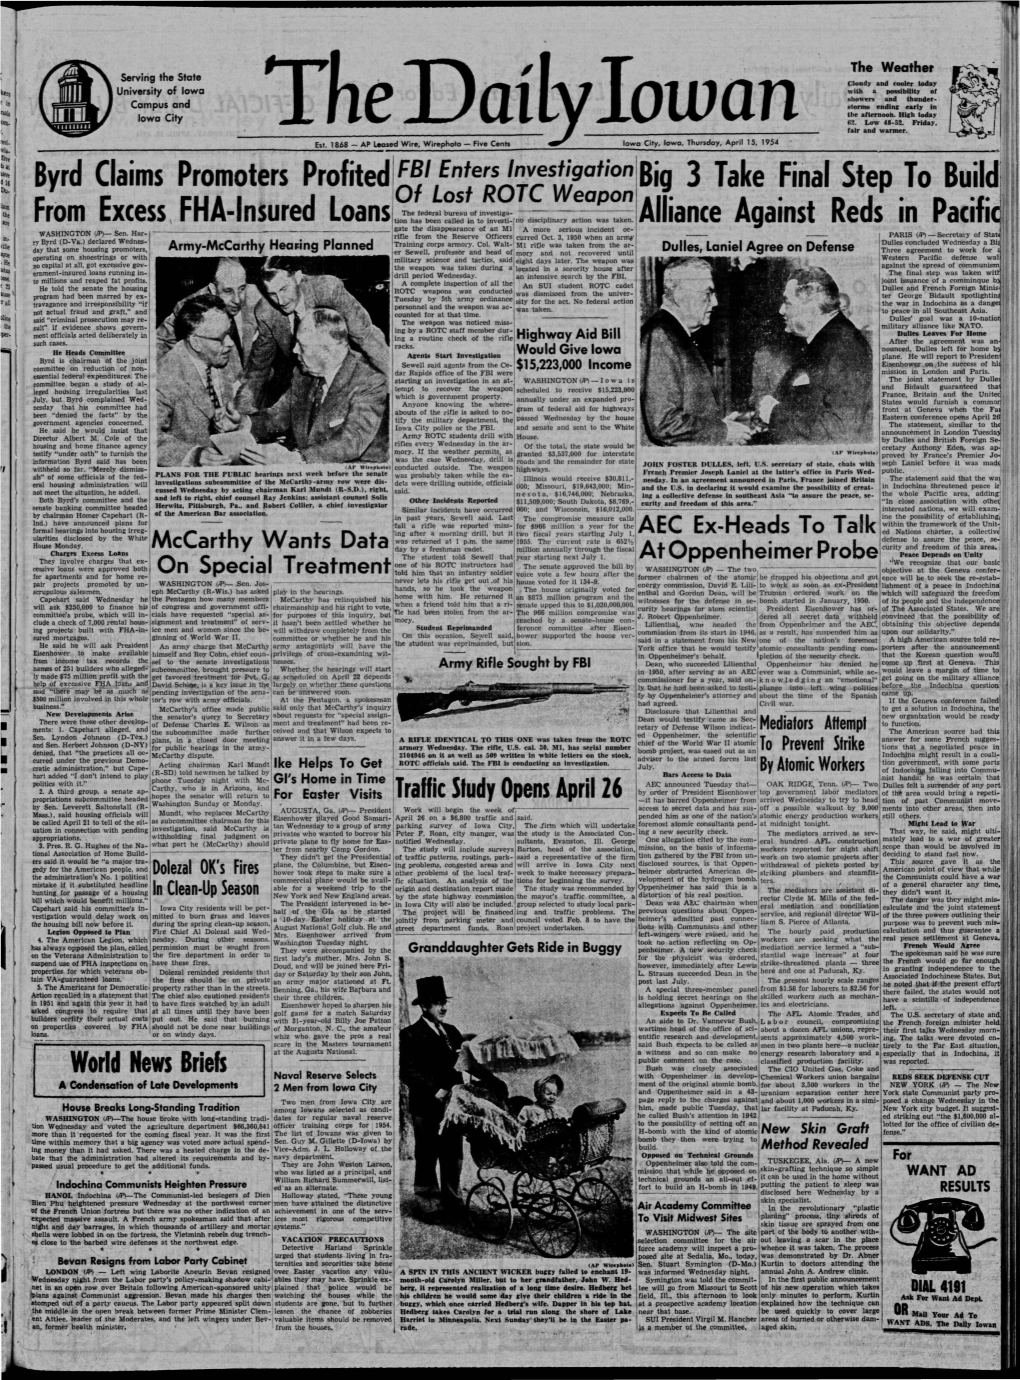 Daily Iowan (Iowa City, Iowa), 1954-04-15